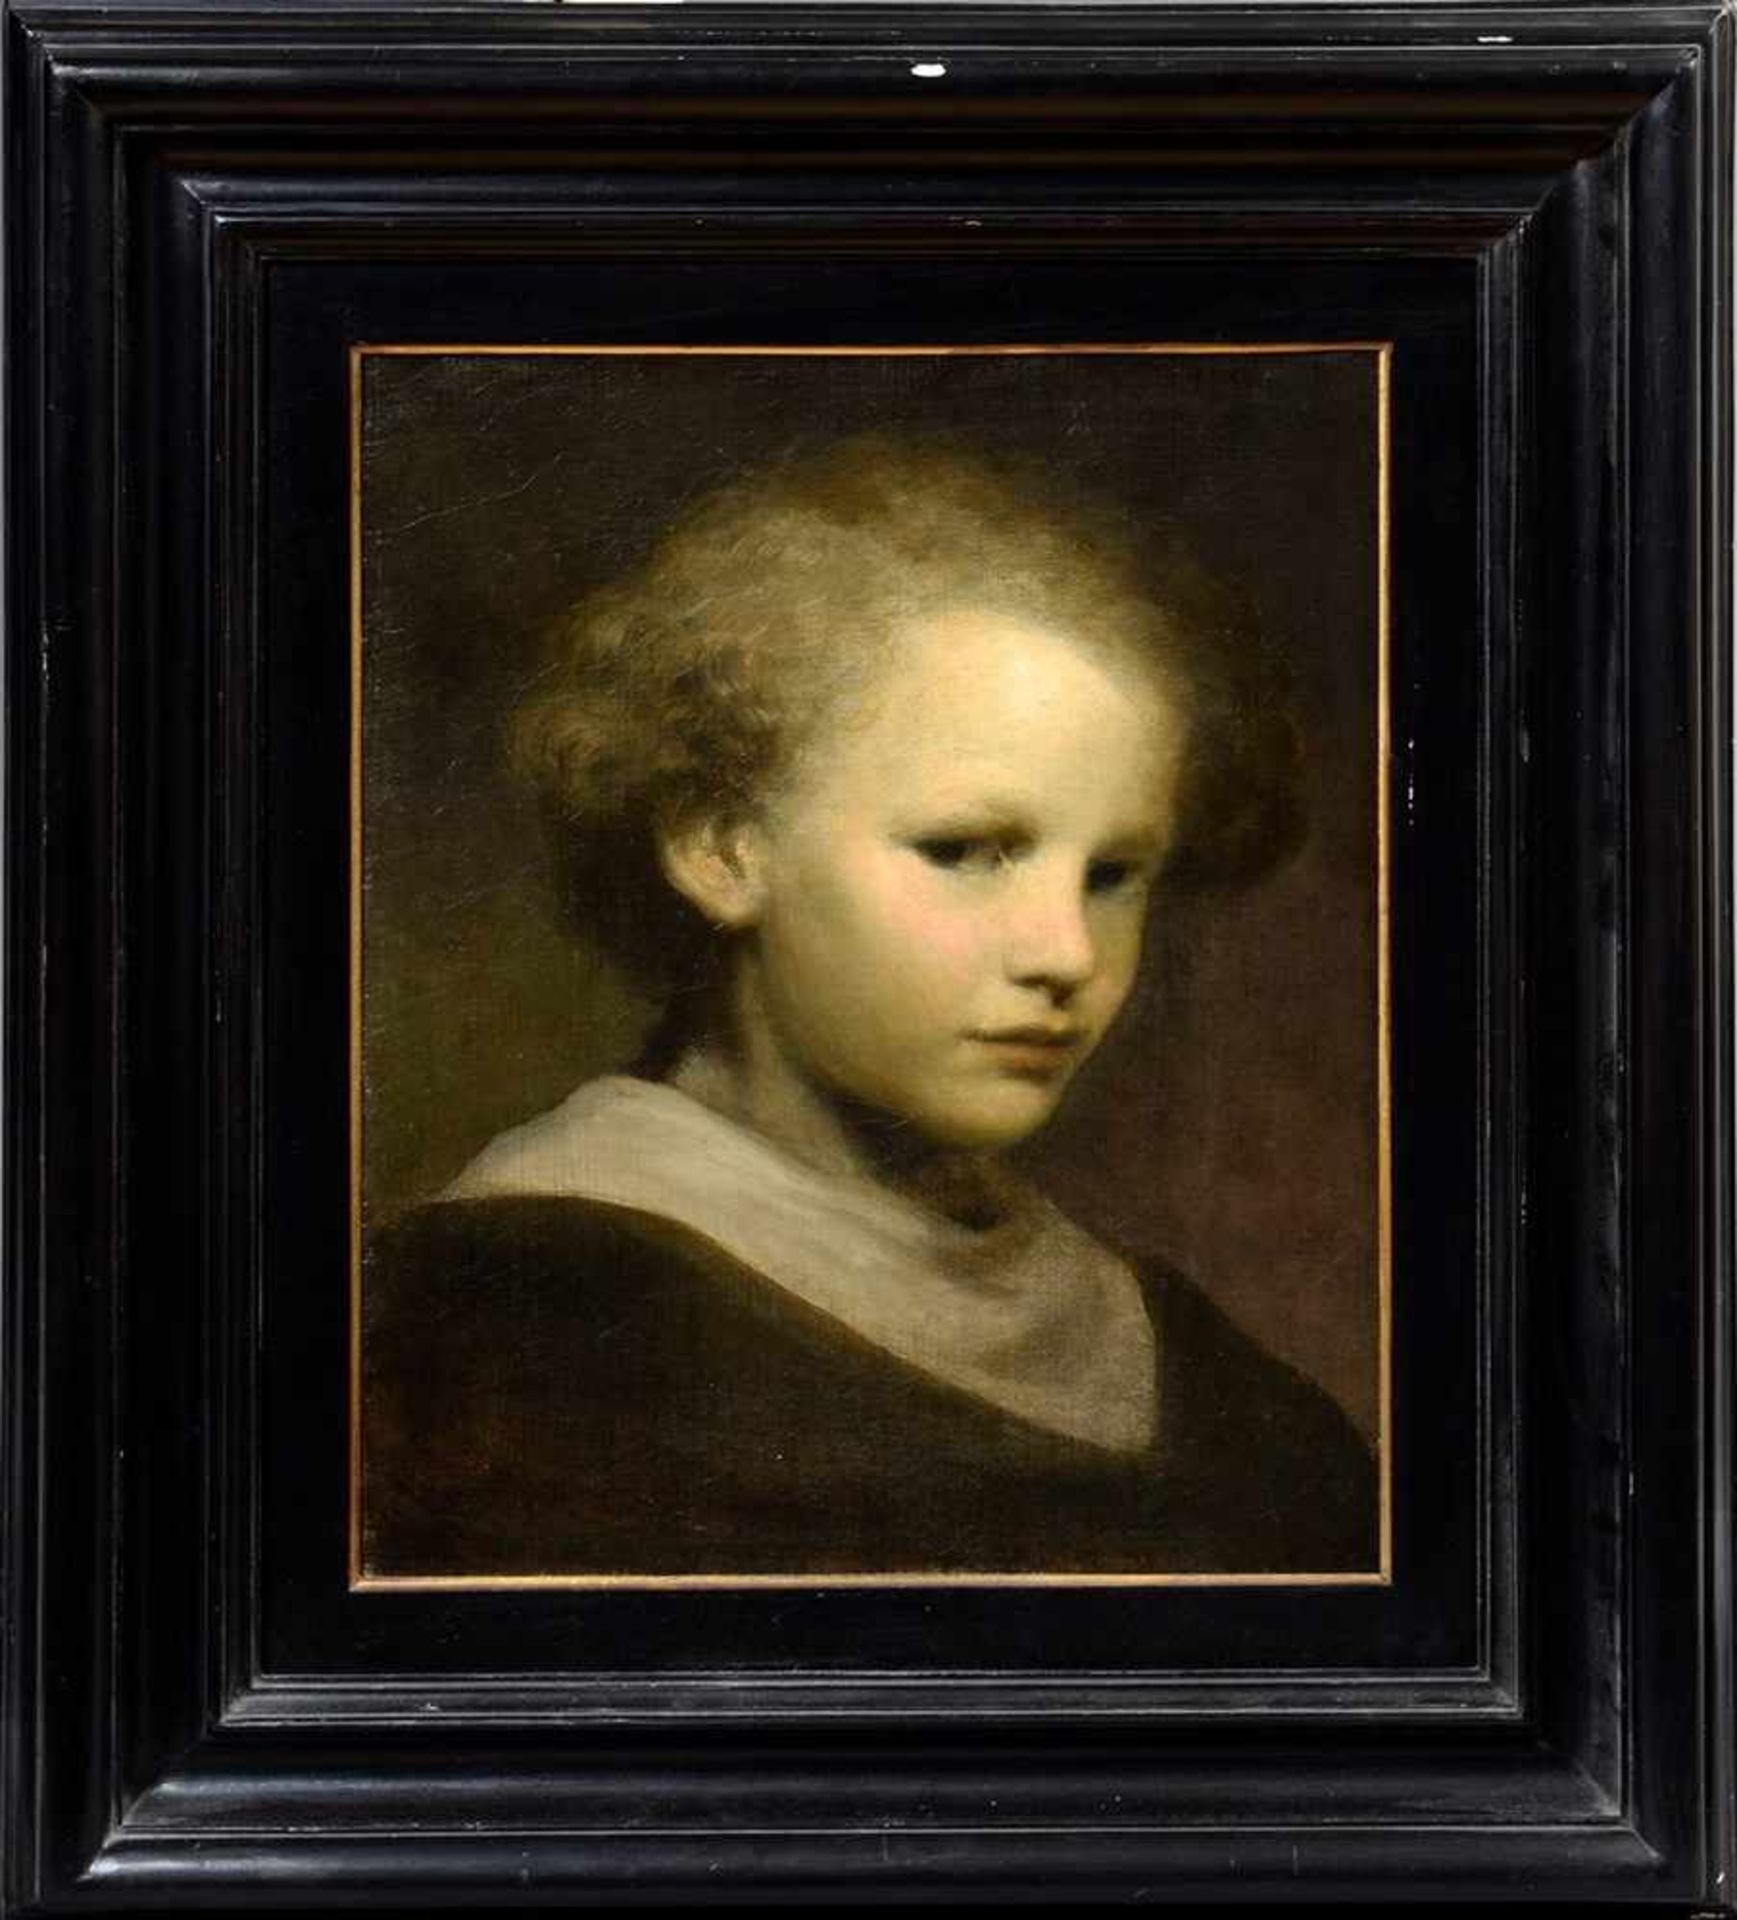 Carriere, Eugène (1849-1906) Nachfolge "Portrait eines Kindes", Öl/Leinwand, 42x34cm (m.R. 65x57cm), - Bild 2 aus 5